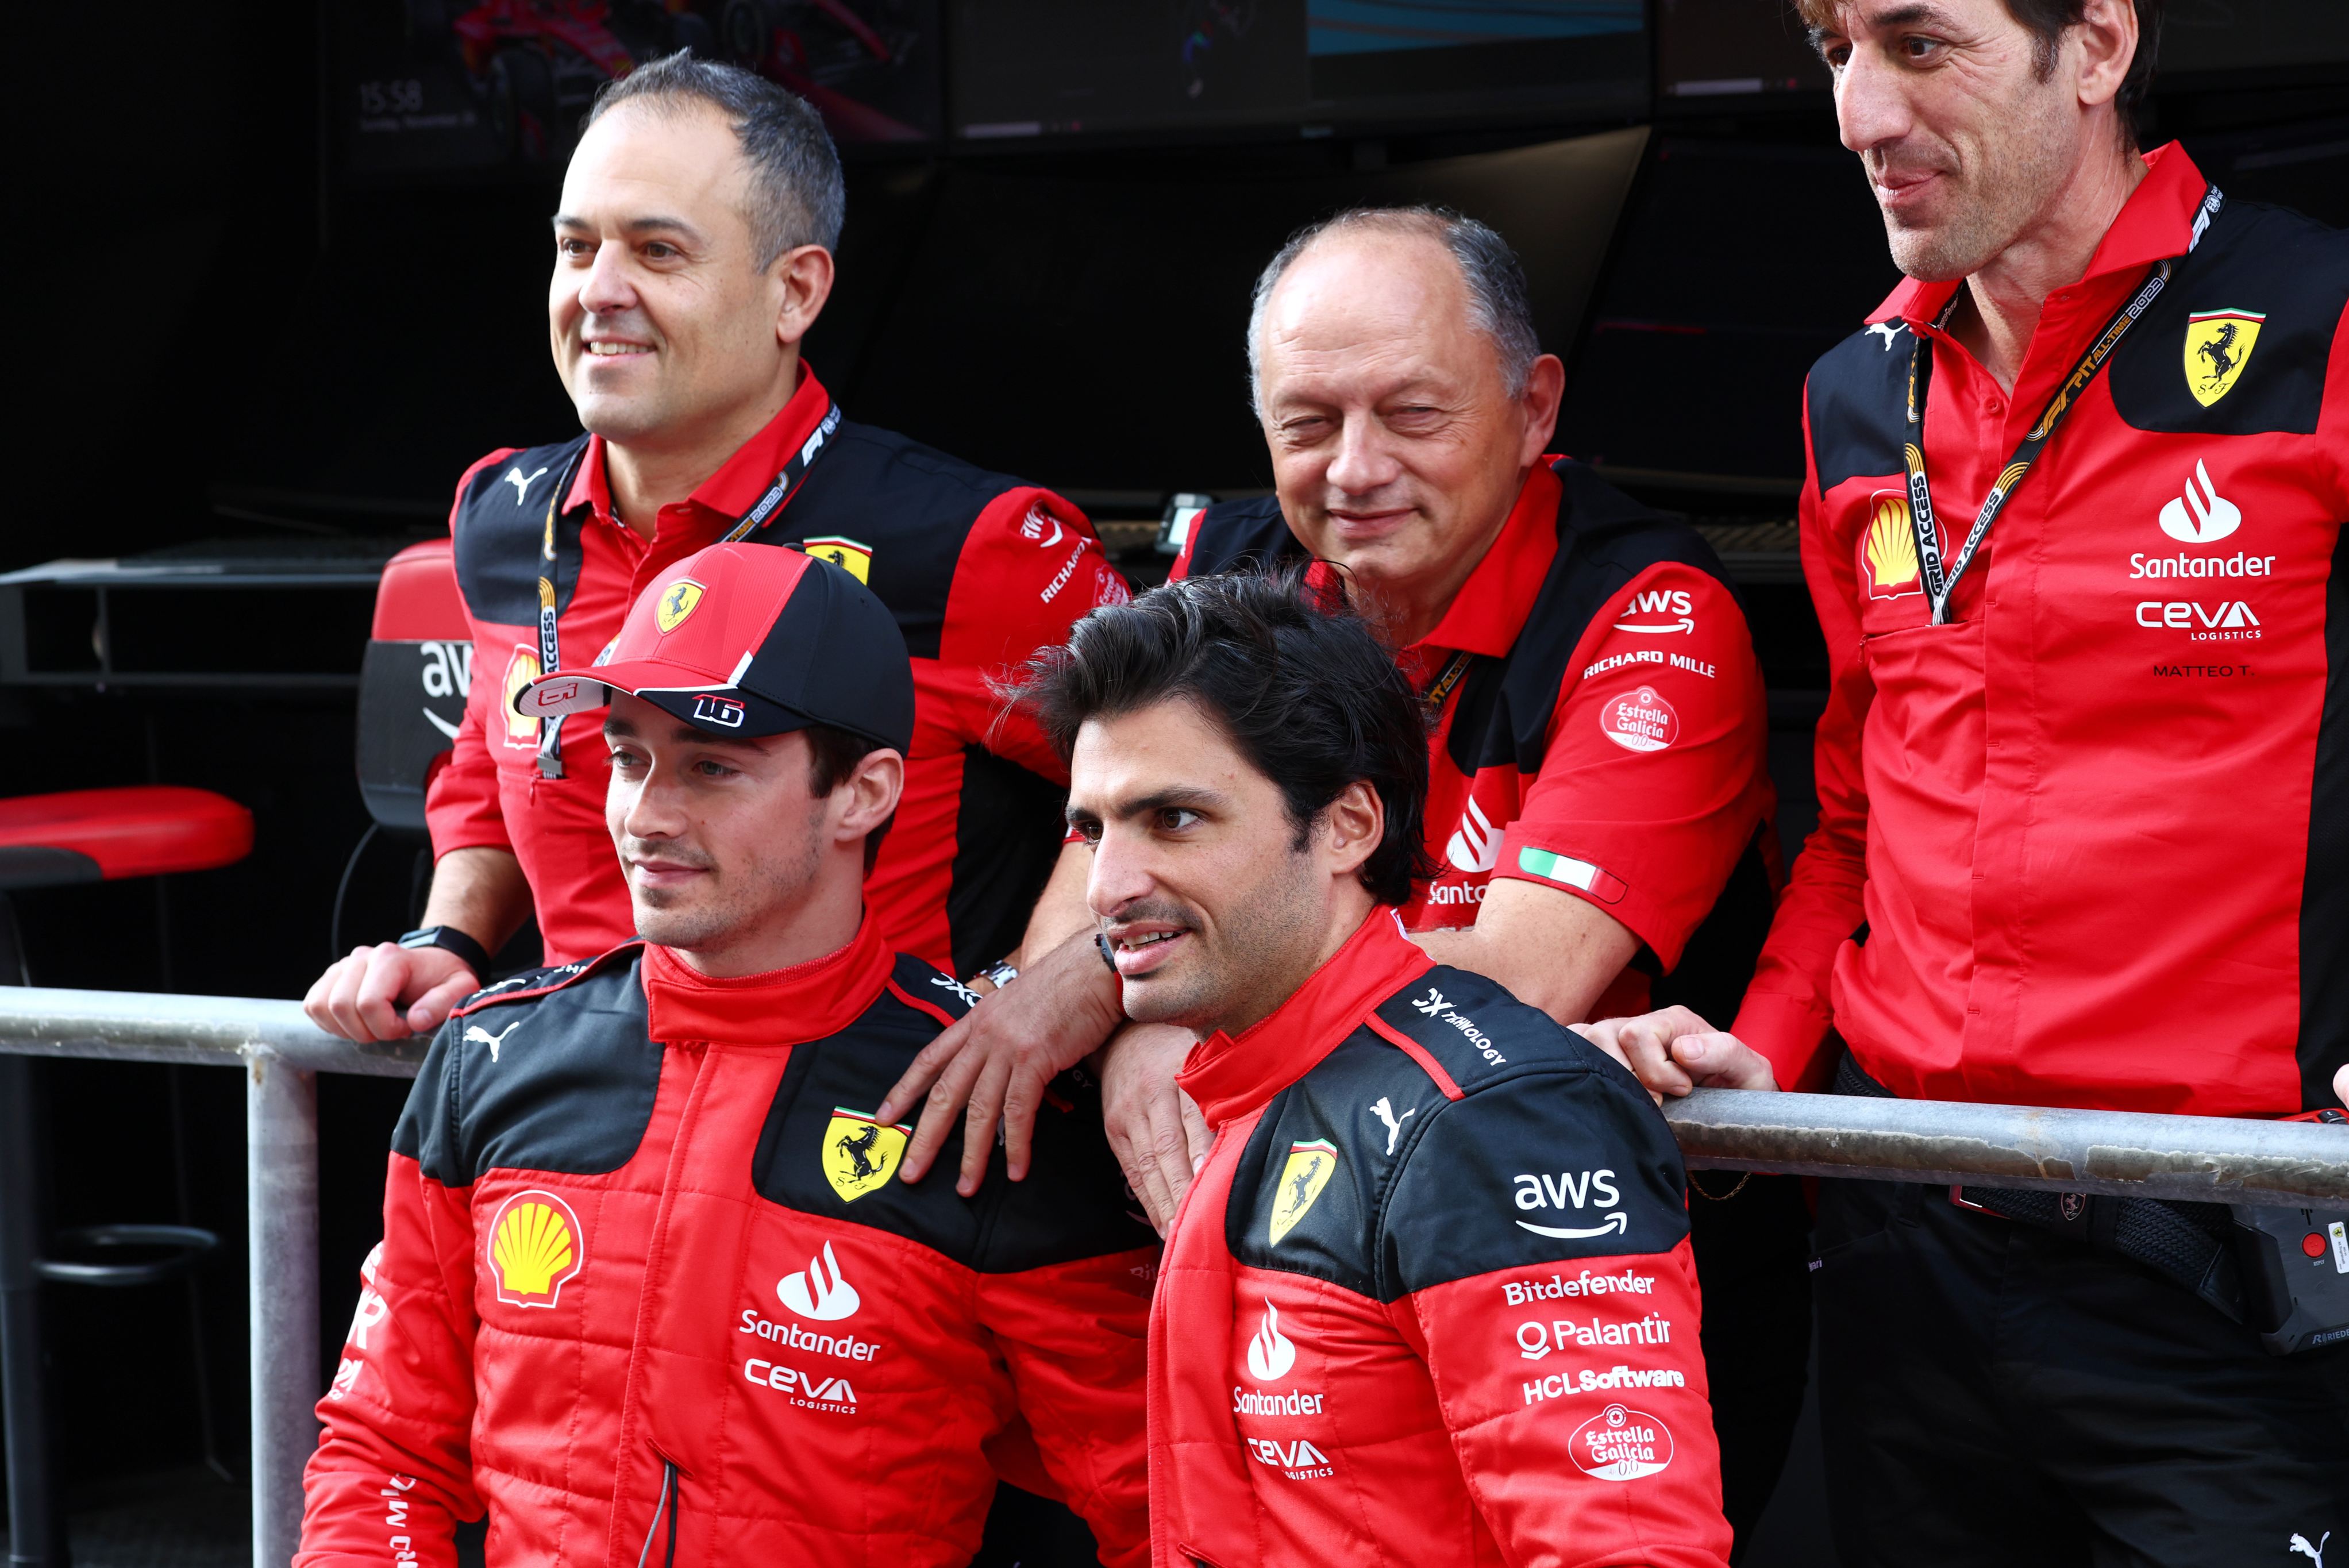 Casquette d'équipe 2023 - Scuderia Ferrari F1